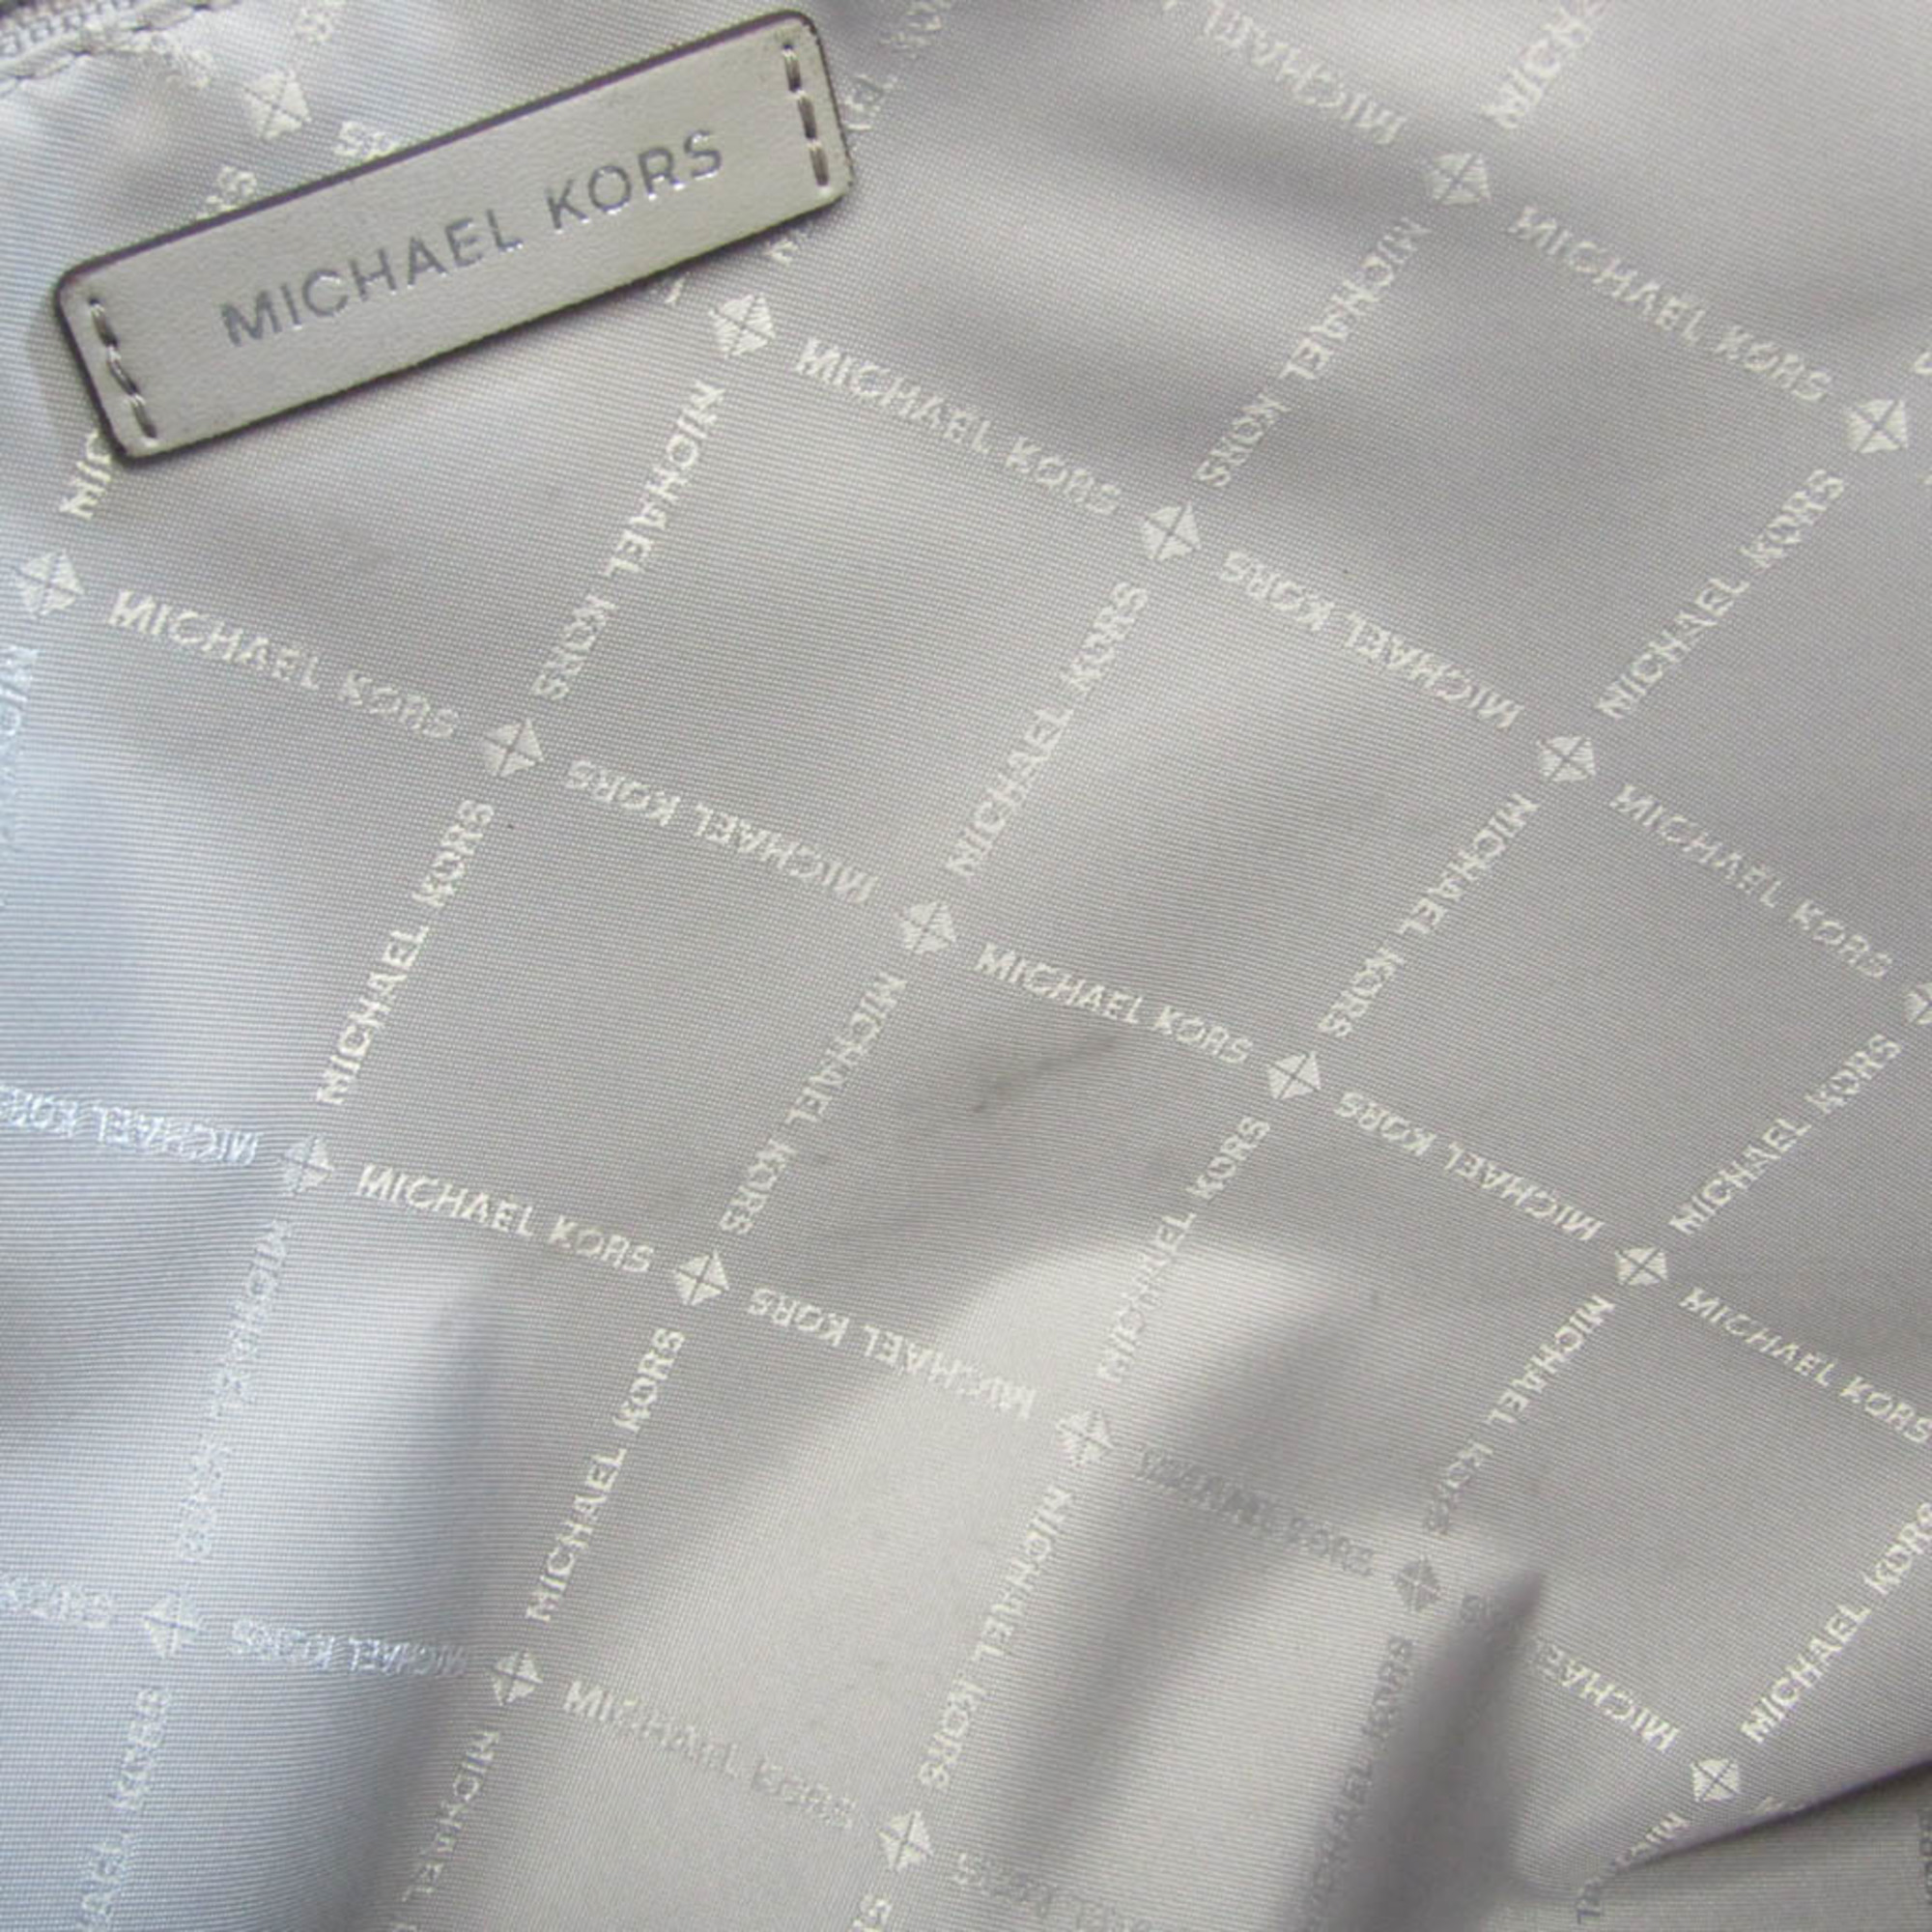 Michael Kors Everly Lg Conv Tote 35S1SZTT3B Women's PVC,Leather Tote Bag Gray,White